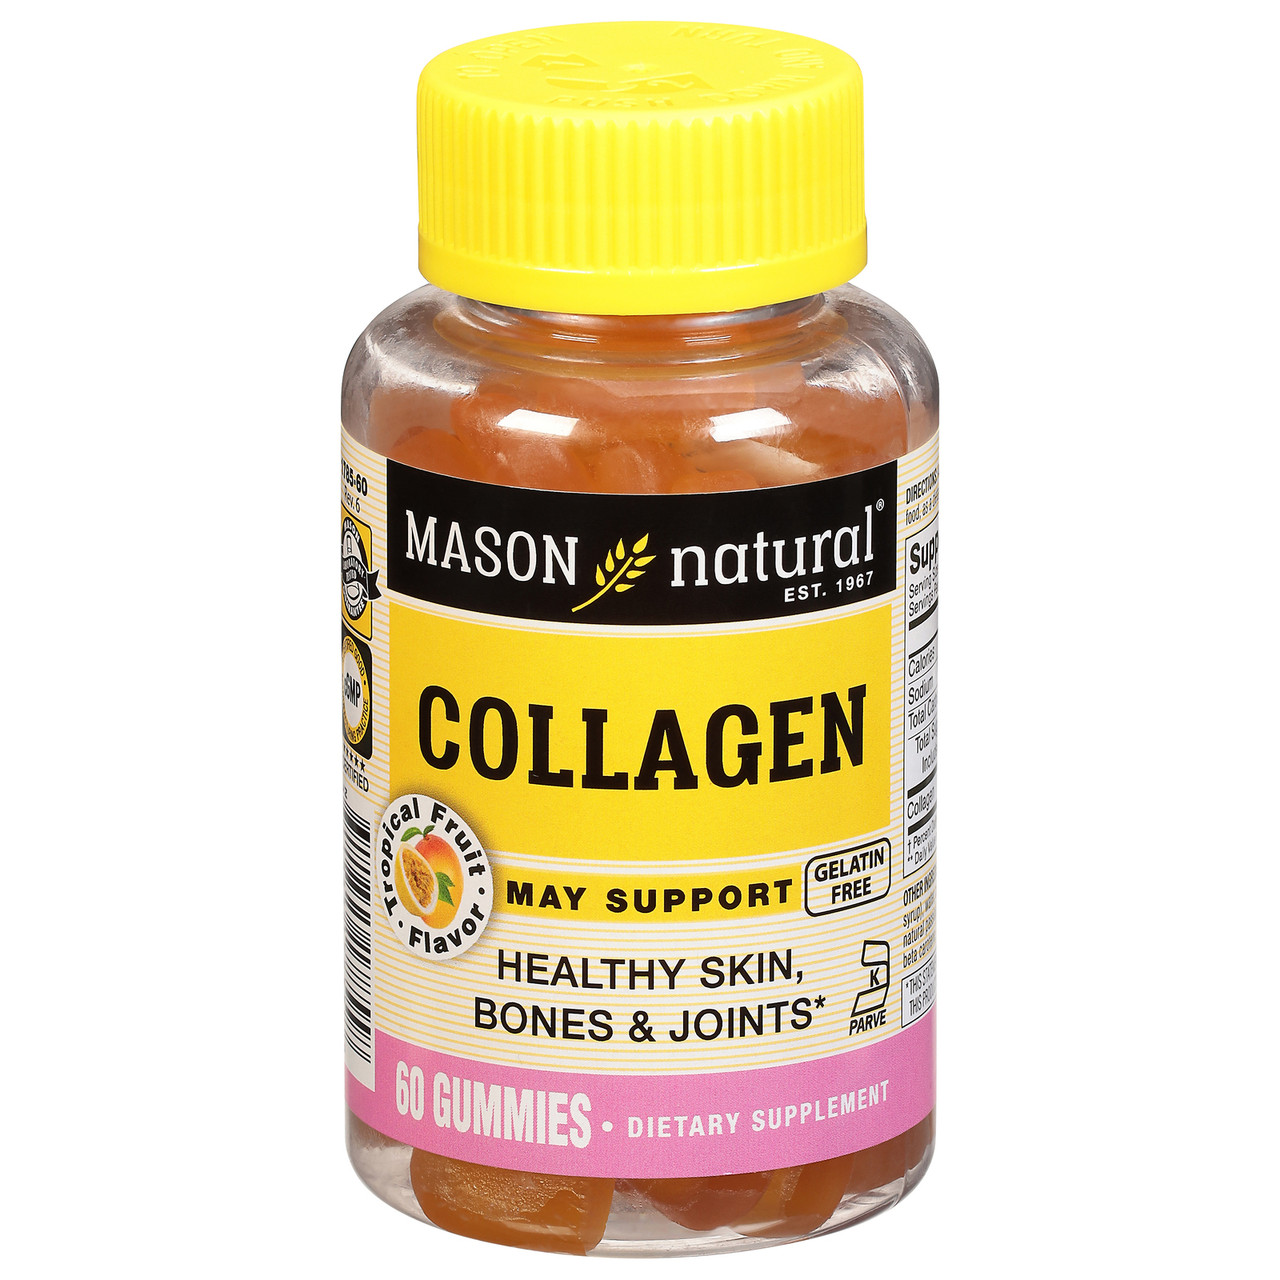 Mason Naturals - Collagen Gummy - 1 Each - 60 Gmmy